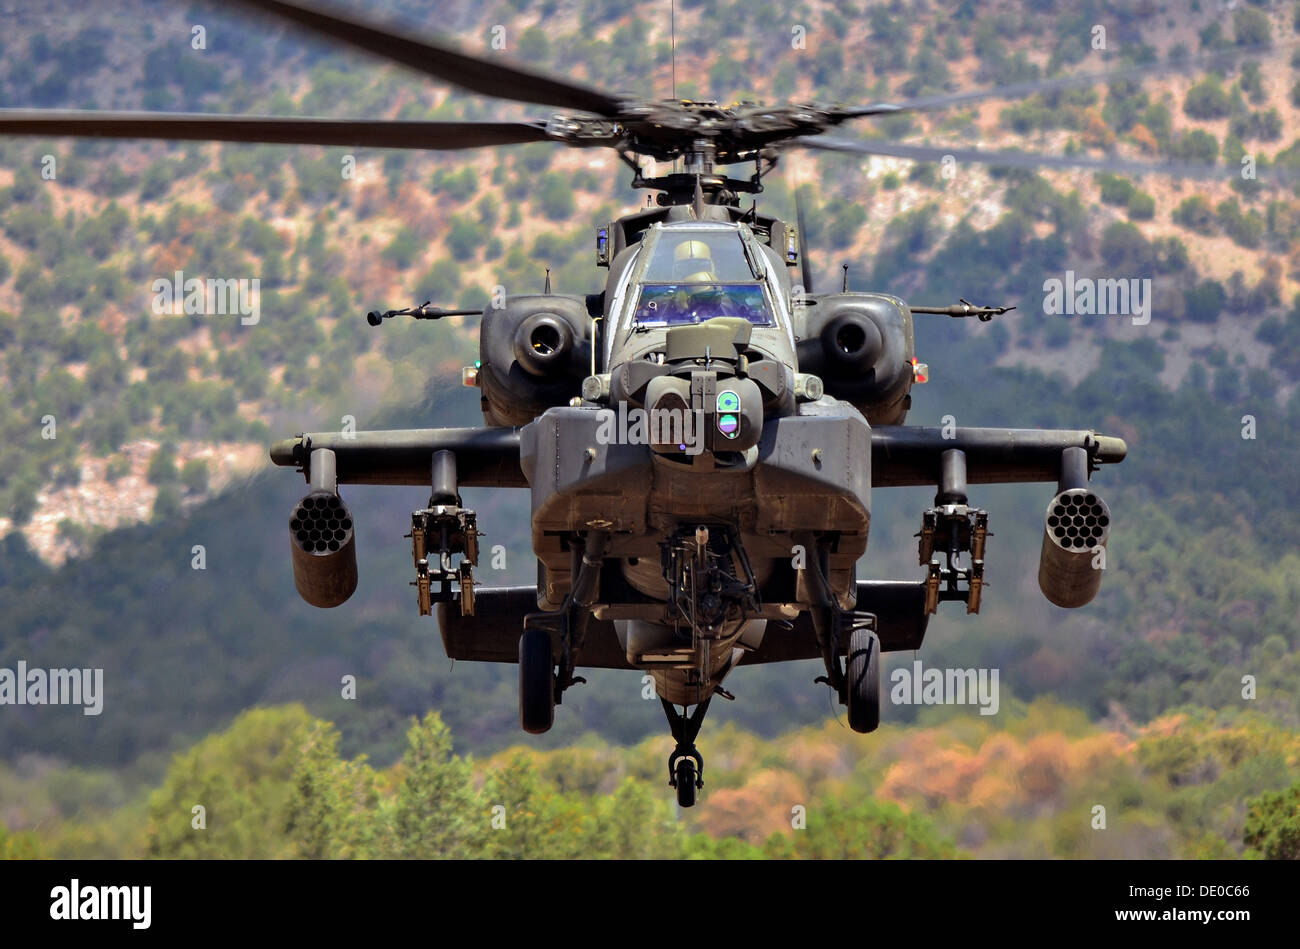 L'armée américaine d'un hélicoptère d'attaque AH-64 Apache participe à une démonstration de recherche pour le ministère de l'Intérieur le 16 juillet 2013 à l'extérieur de Canon City, CO. Banque D'Images